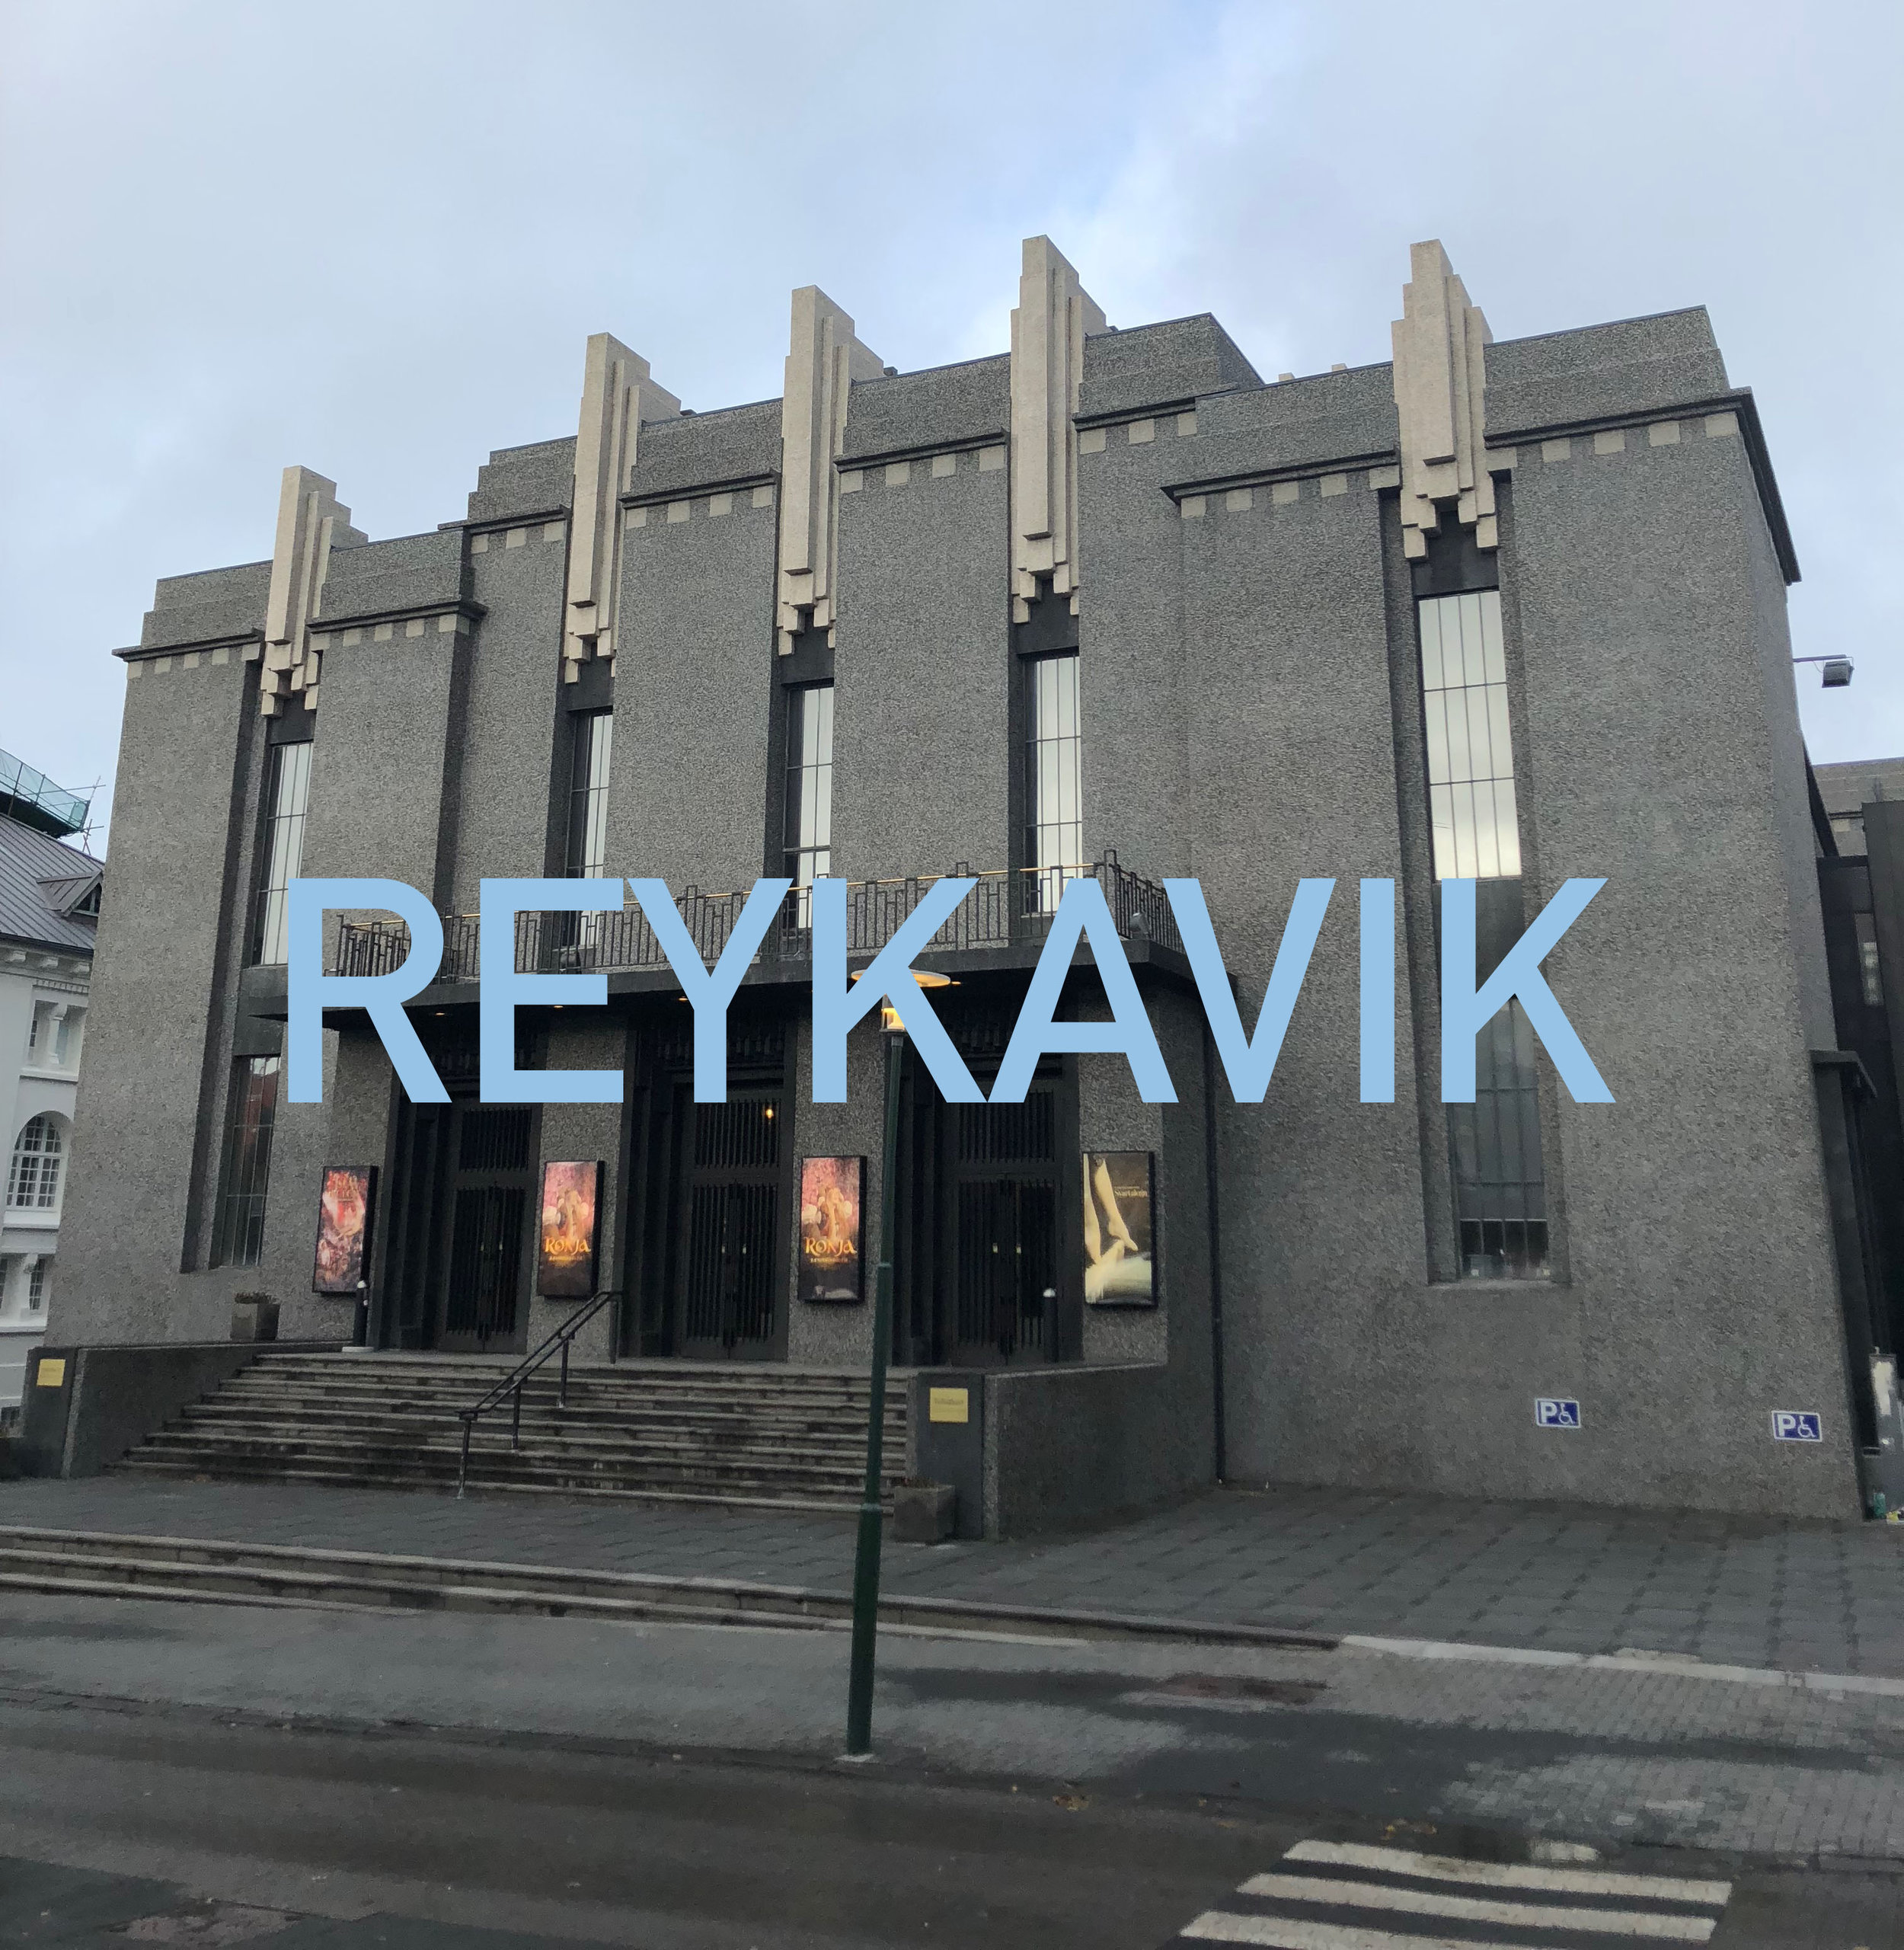 Reykavik